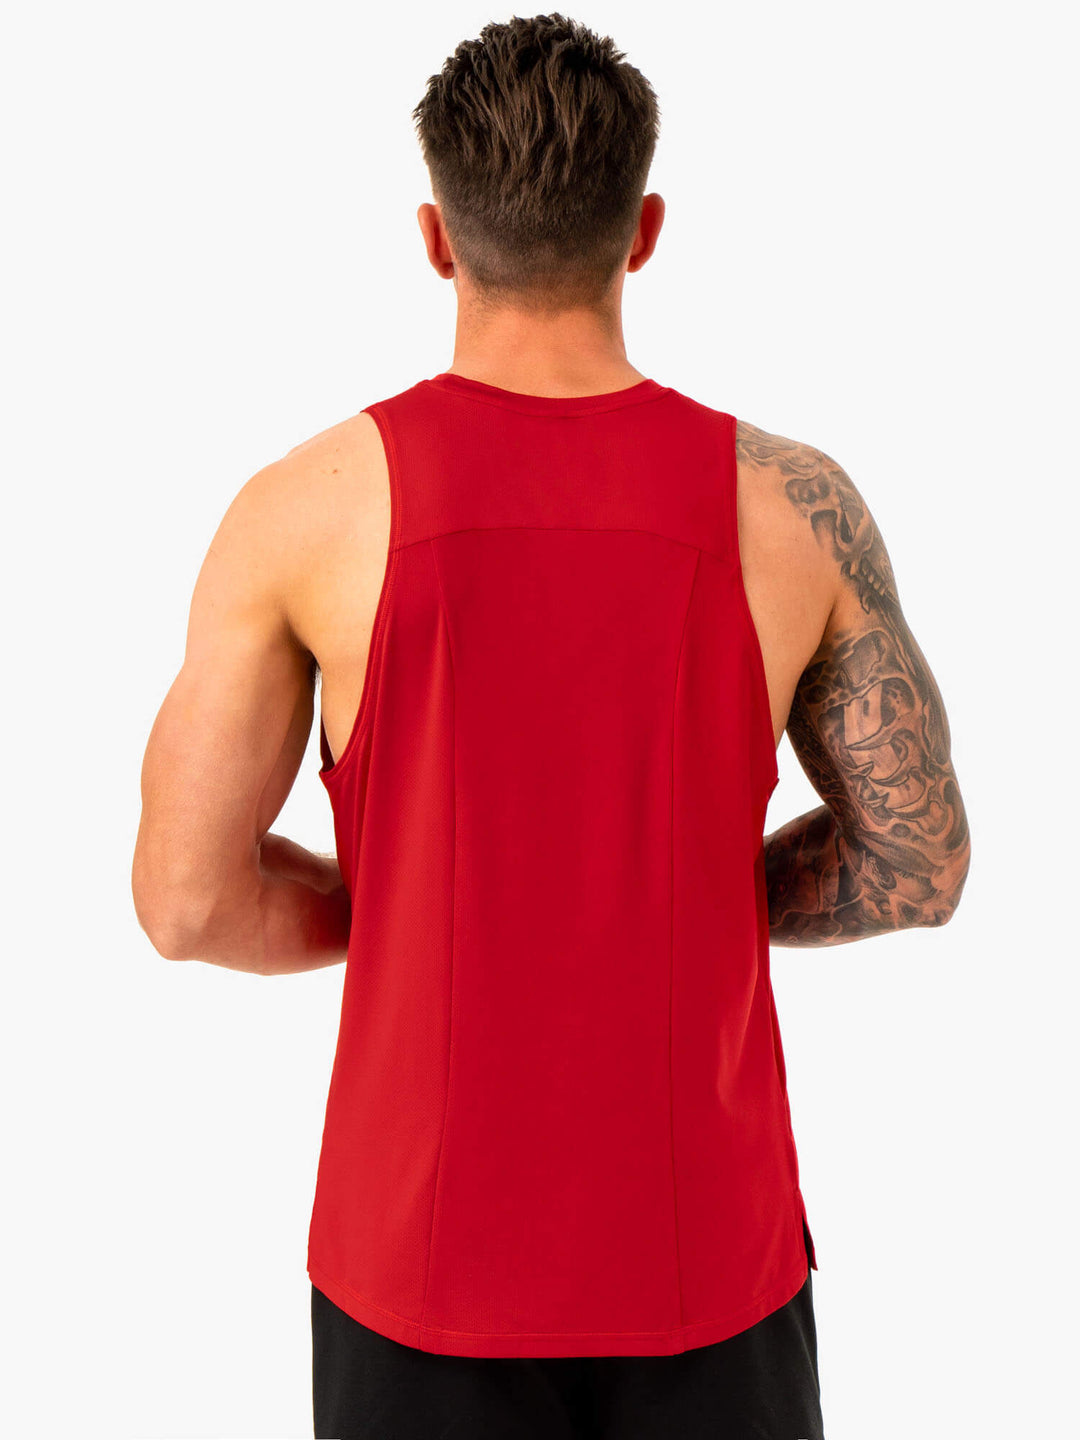 Optimal Mesh Tank - Red Clothing Ryderwear 